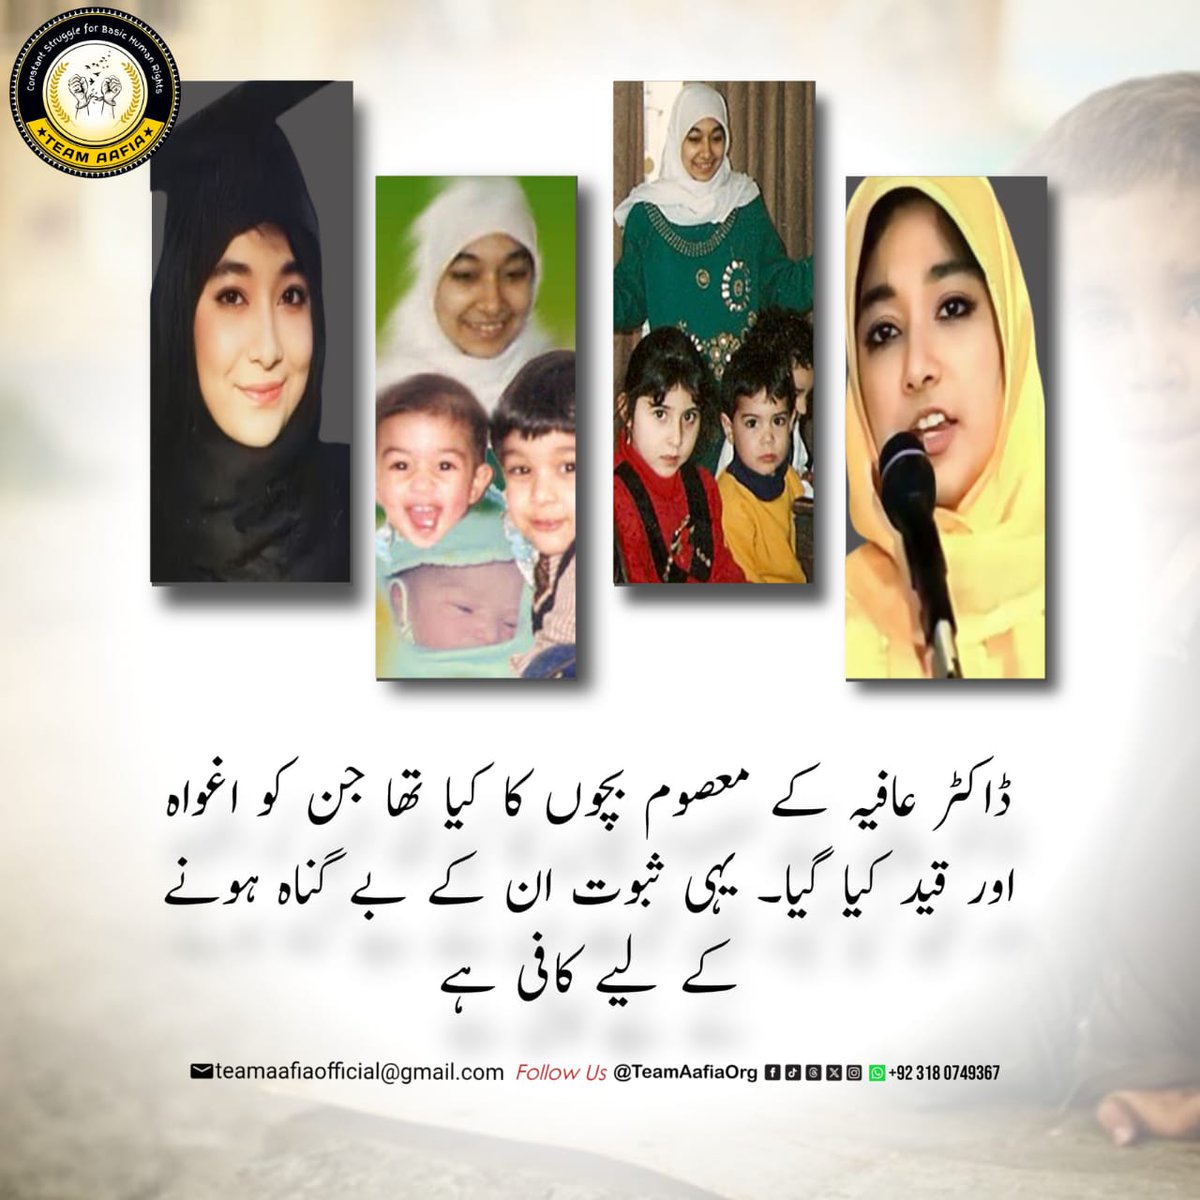 ڈاکٹر عافیہ صدیقی ایک معزز پاکستانی خاتون ہے 
#AafiaTheTrueStory
Free Aafia 
Dr Aafia Siddiqui 
@TeamAafiaOrg_
Raise voice for her